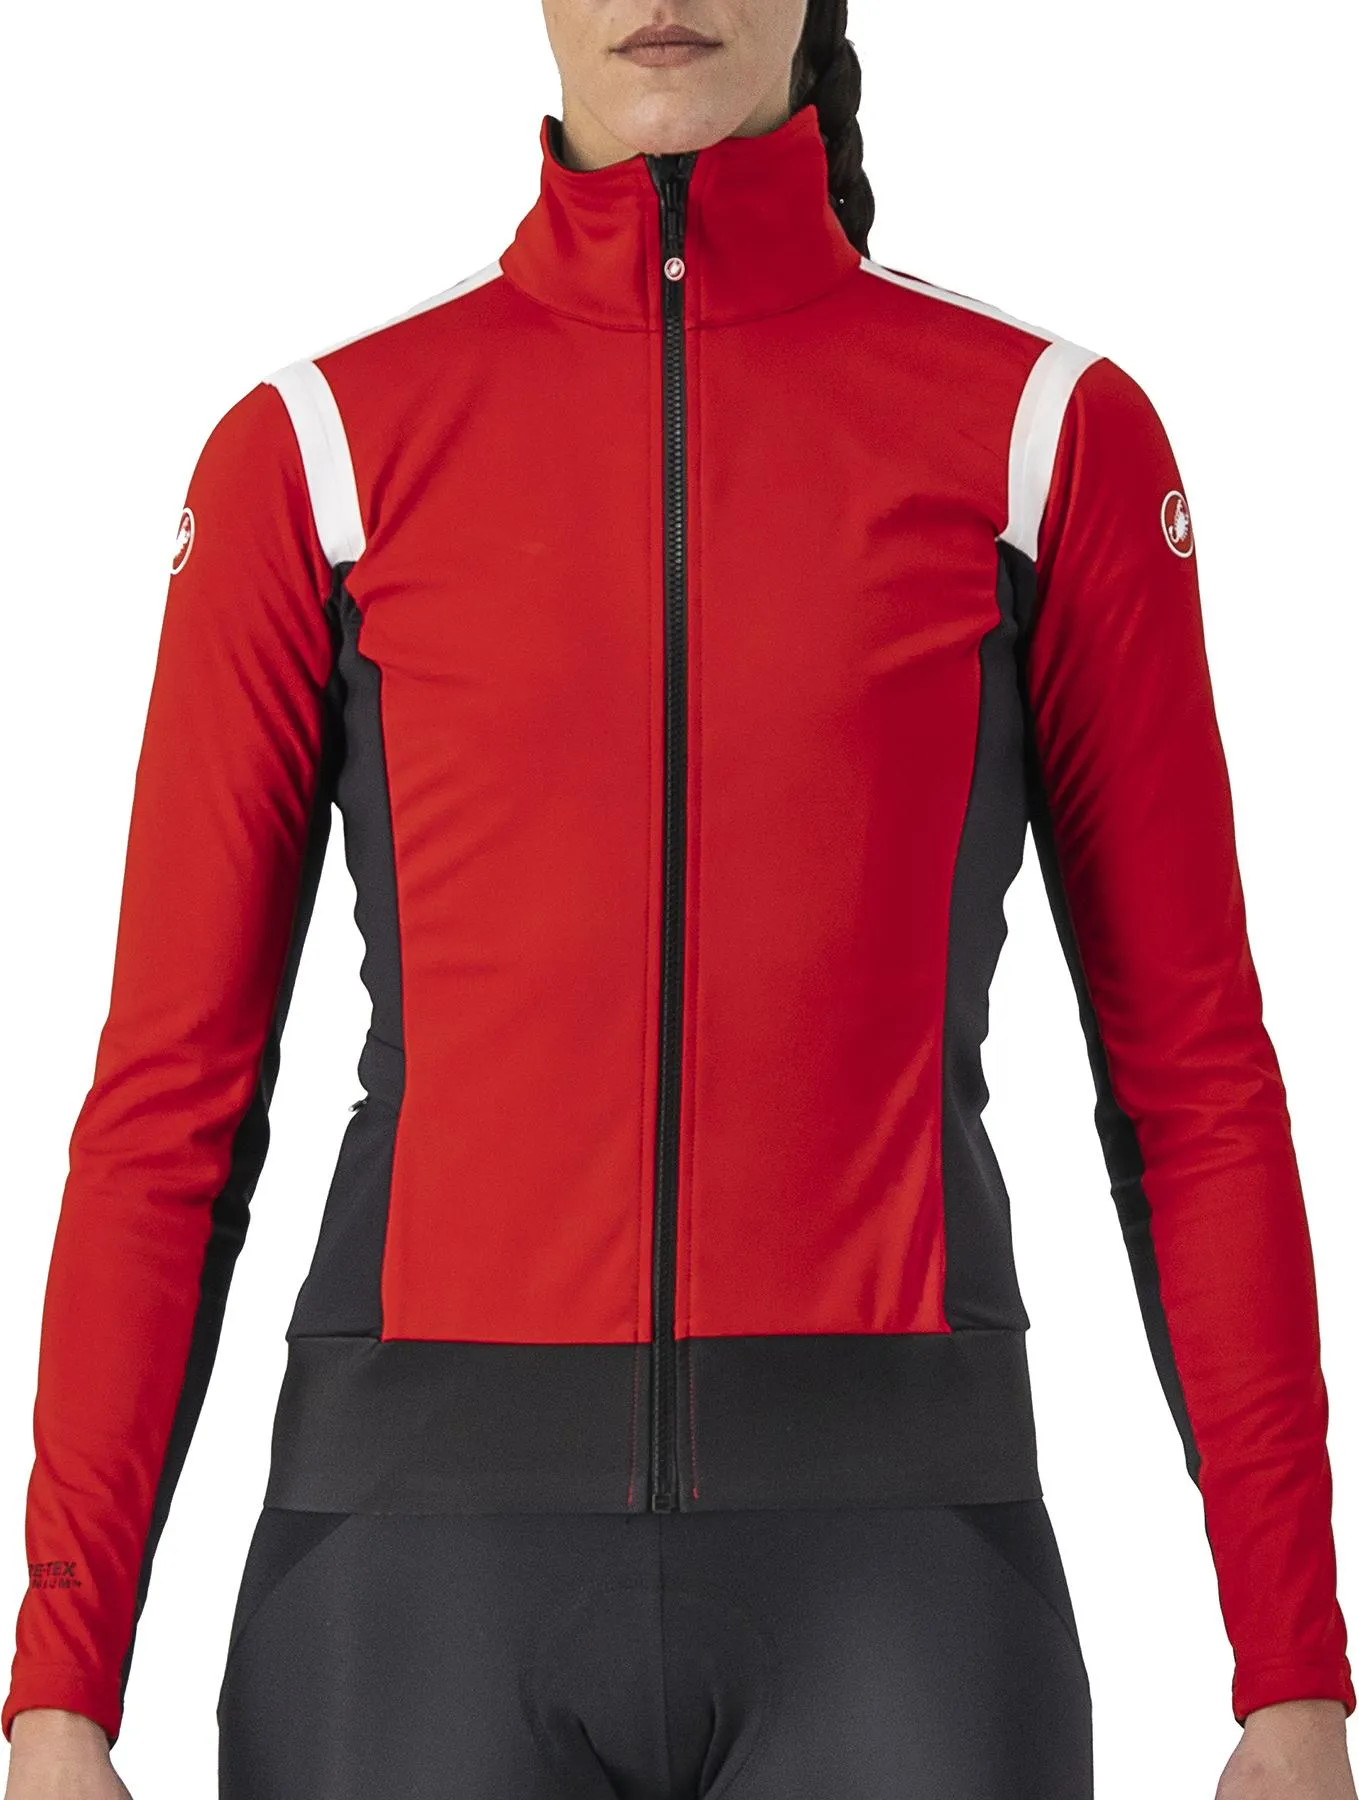  Women's Alpha ROS 2 Light Jacket, Red/Black/White